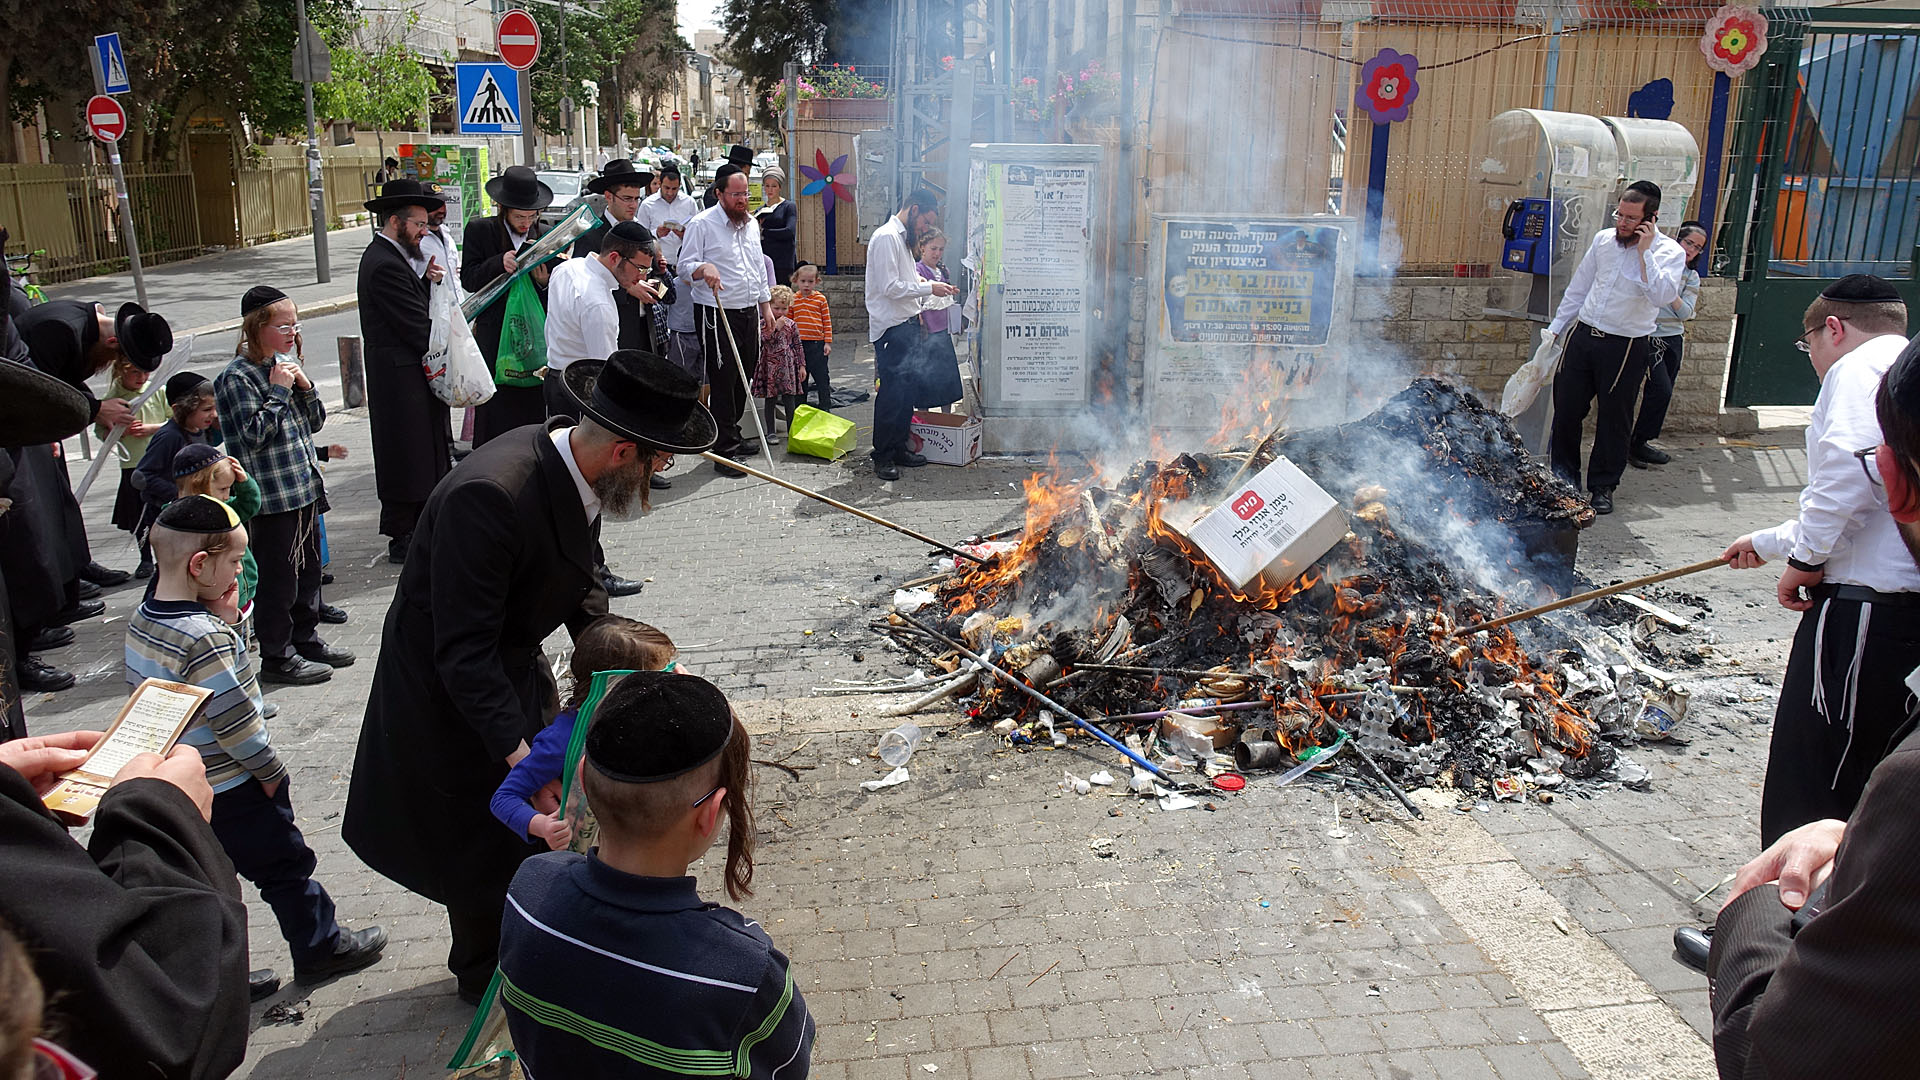 Für gewöhnlich kommen ultra-orthodoxe Juden an mehreren Orten im Stadtteil zusammen, um Chametz zu verbrennen. In diesem Jahr fallen diese Zusammenkünfte kleiner aus.